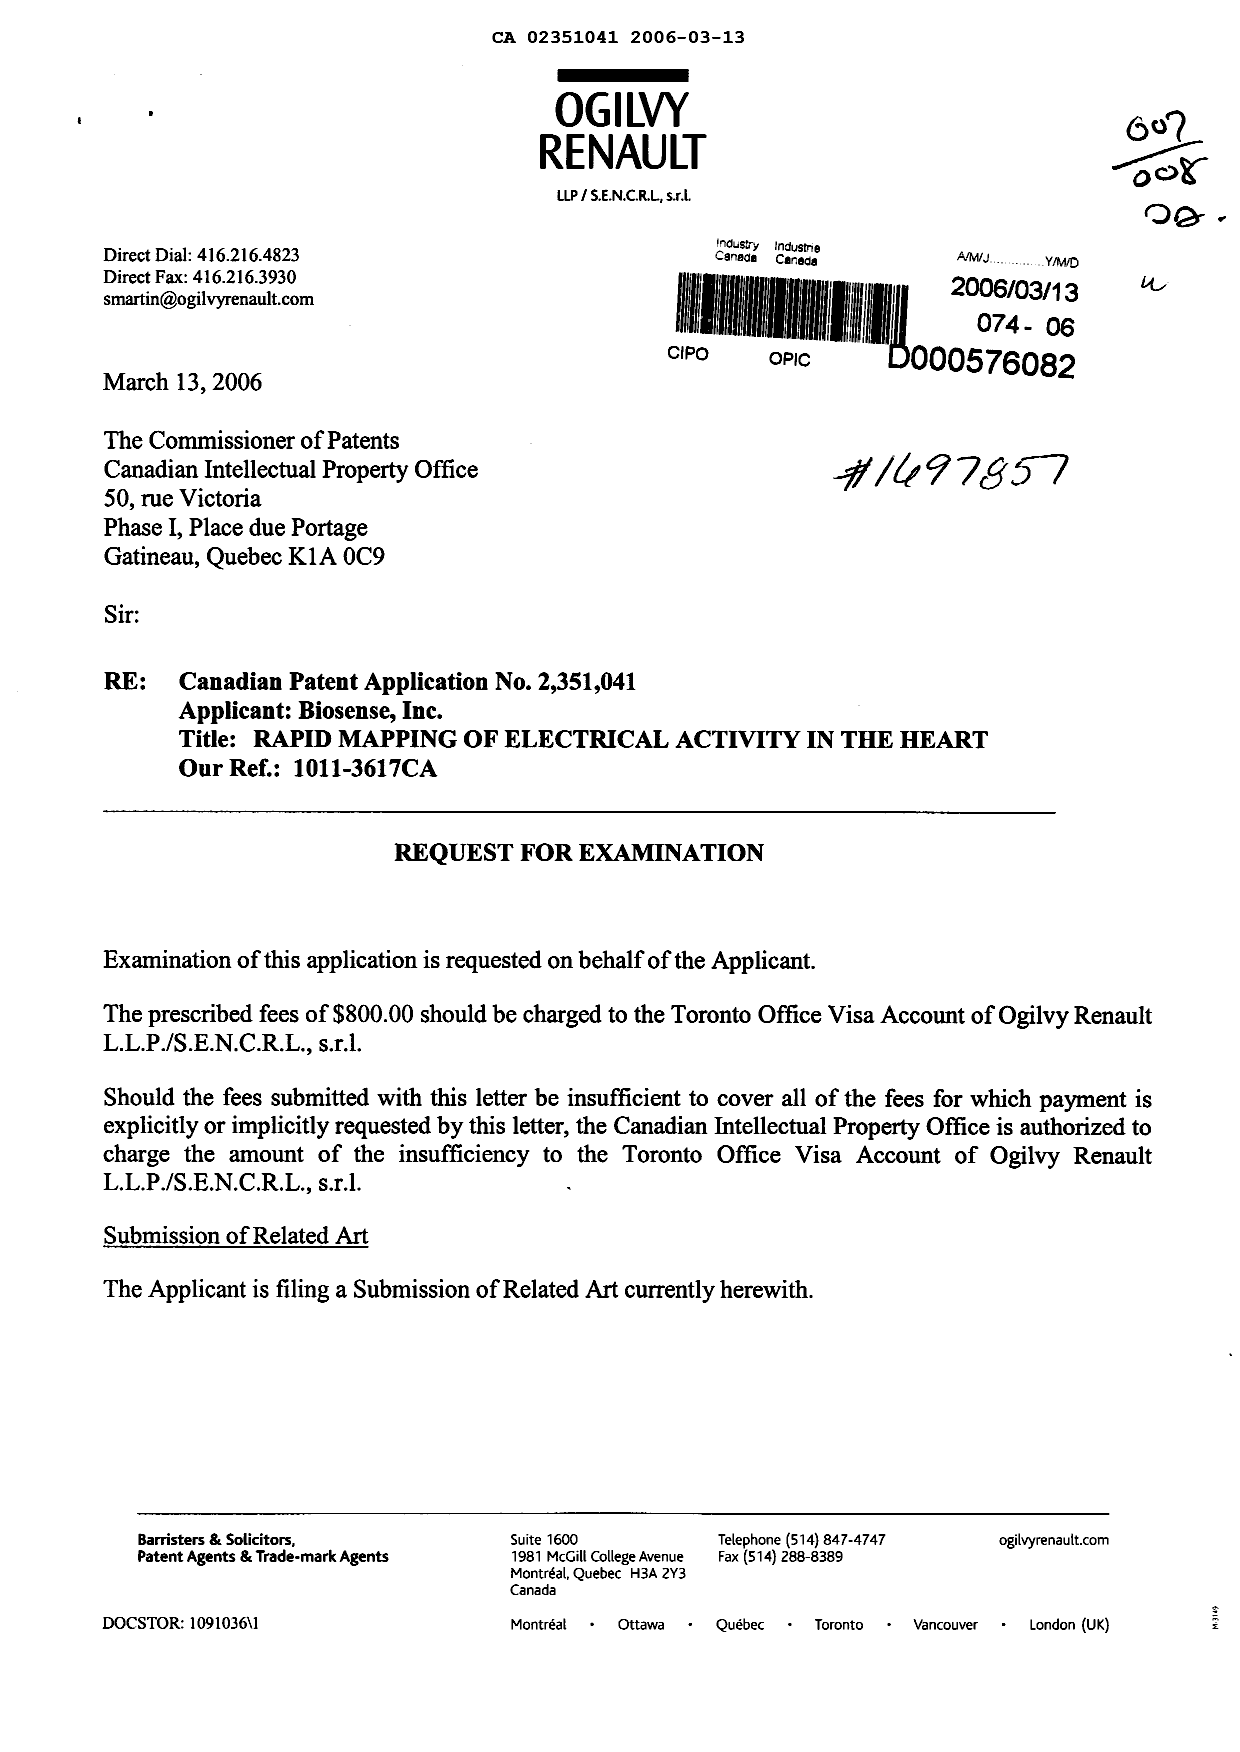 Document de brevet canadien 2351041. Poursuite-Amendment 20060313. Image 1 de 4